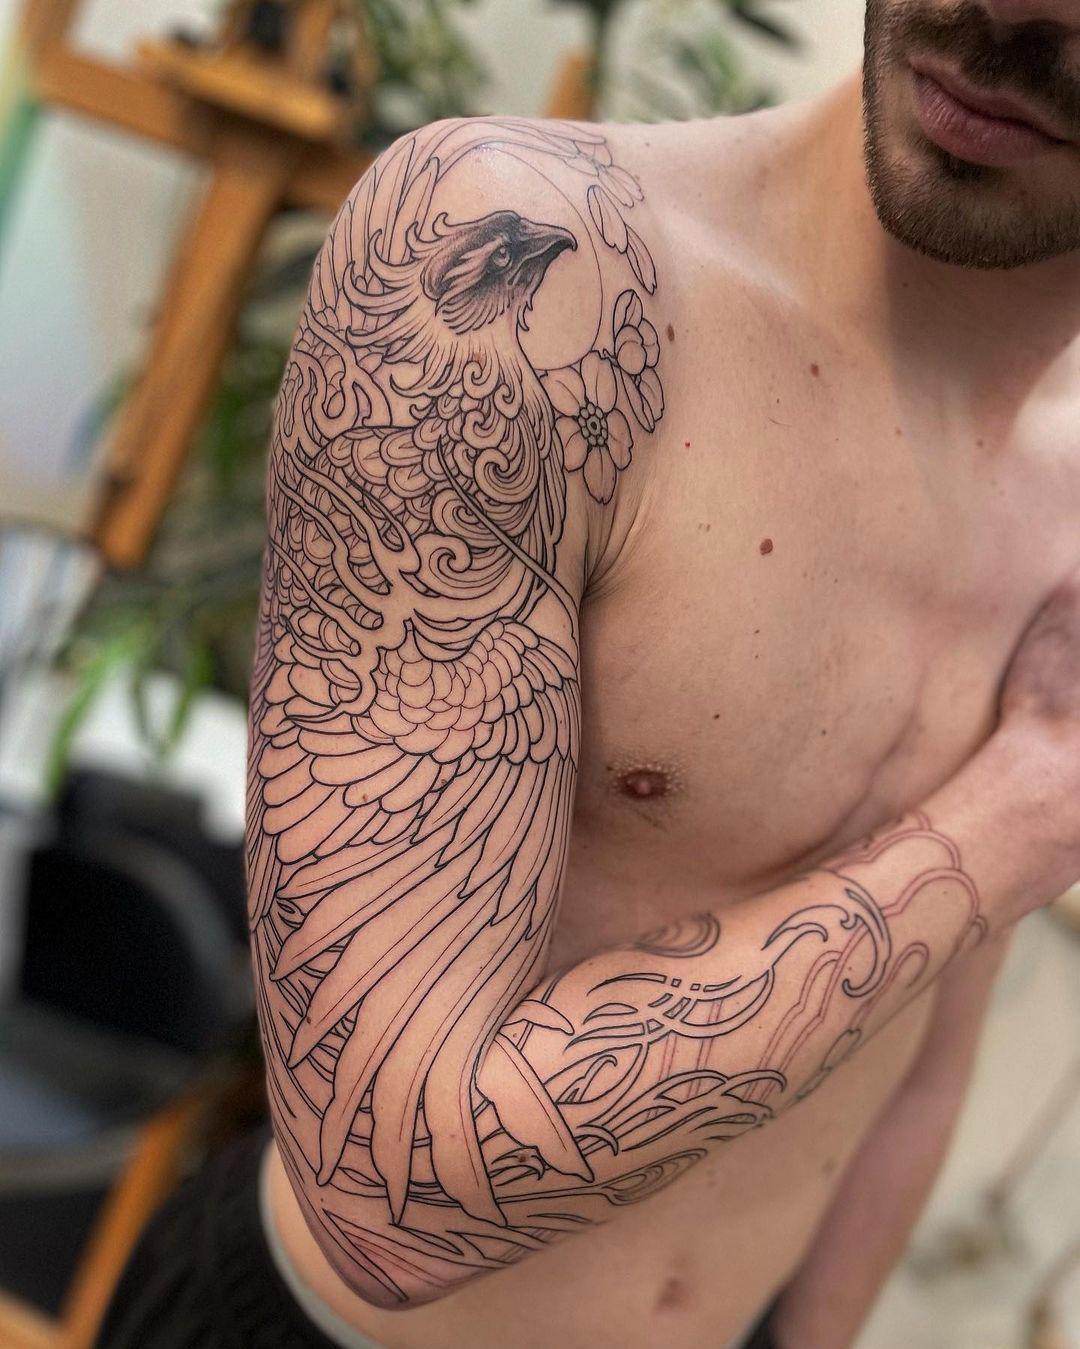 Una manga tatuada con el ave fénix